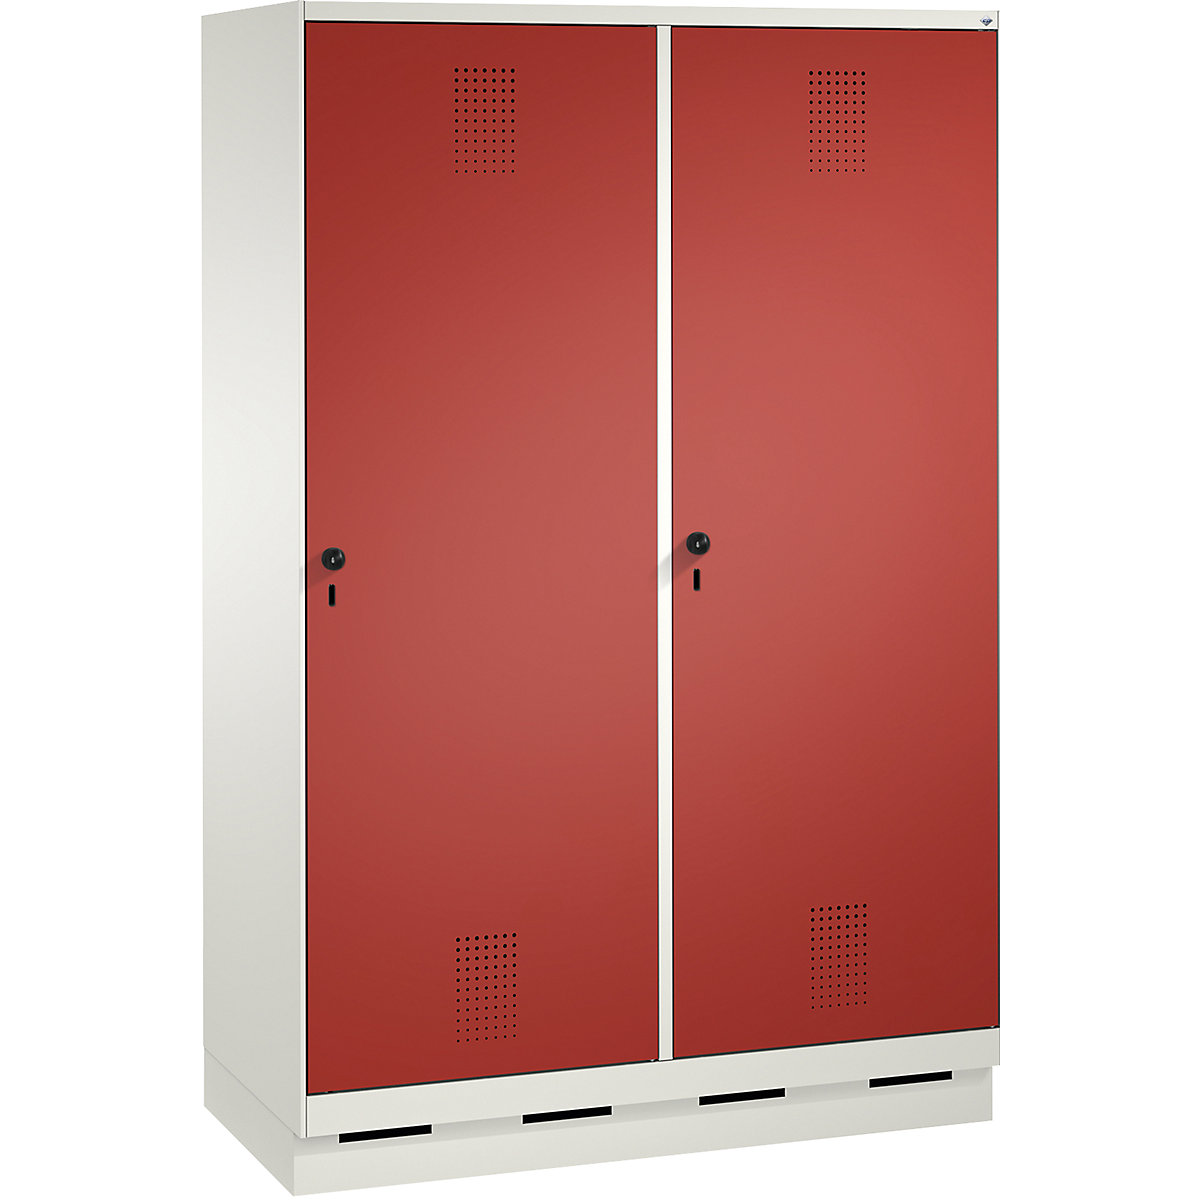 EVOLO Garderobenschrank, Tür über 2 Abteile, mit Sockel C+P, 4 Abteile, 2 Türen, Abteilbreite 300 mm, verkehrsweiß / feuerrot-5